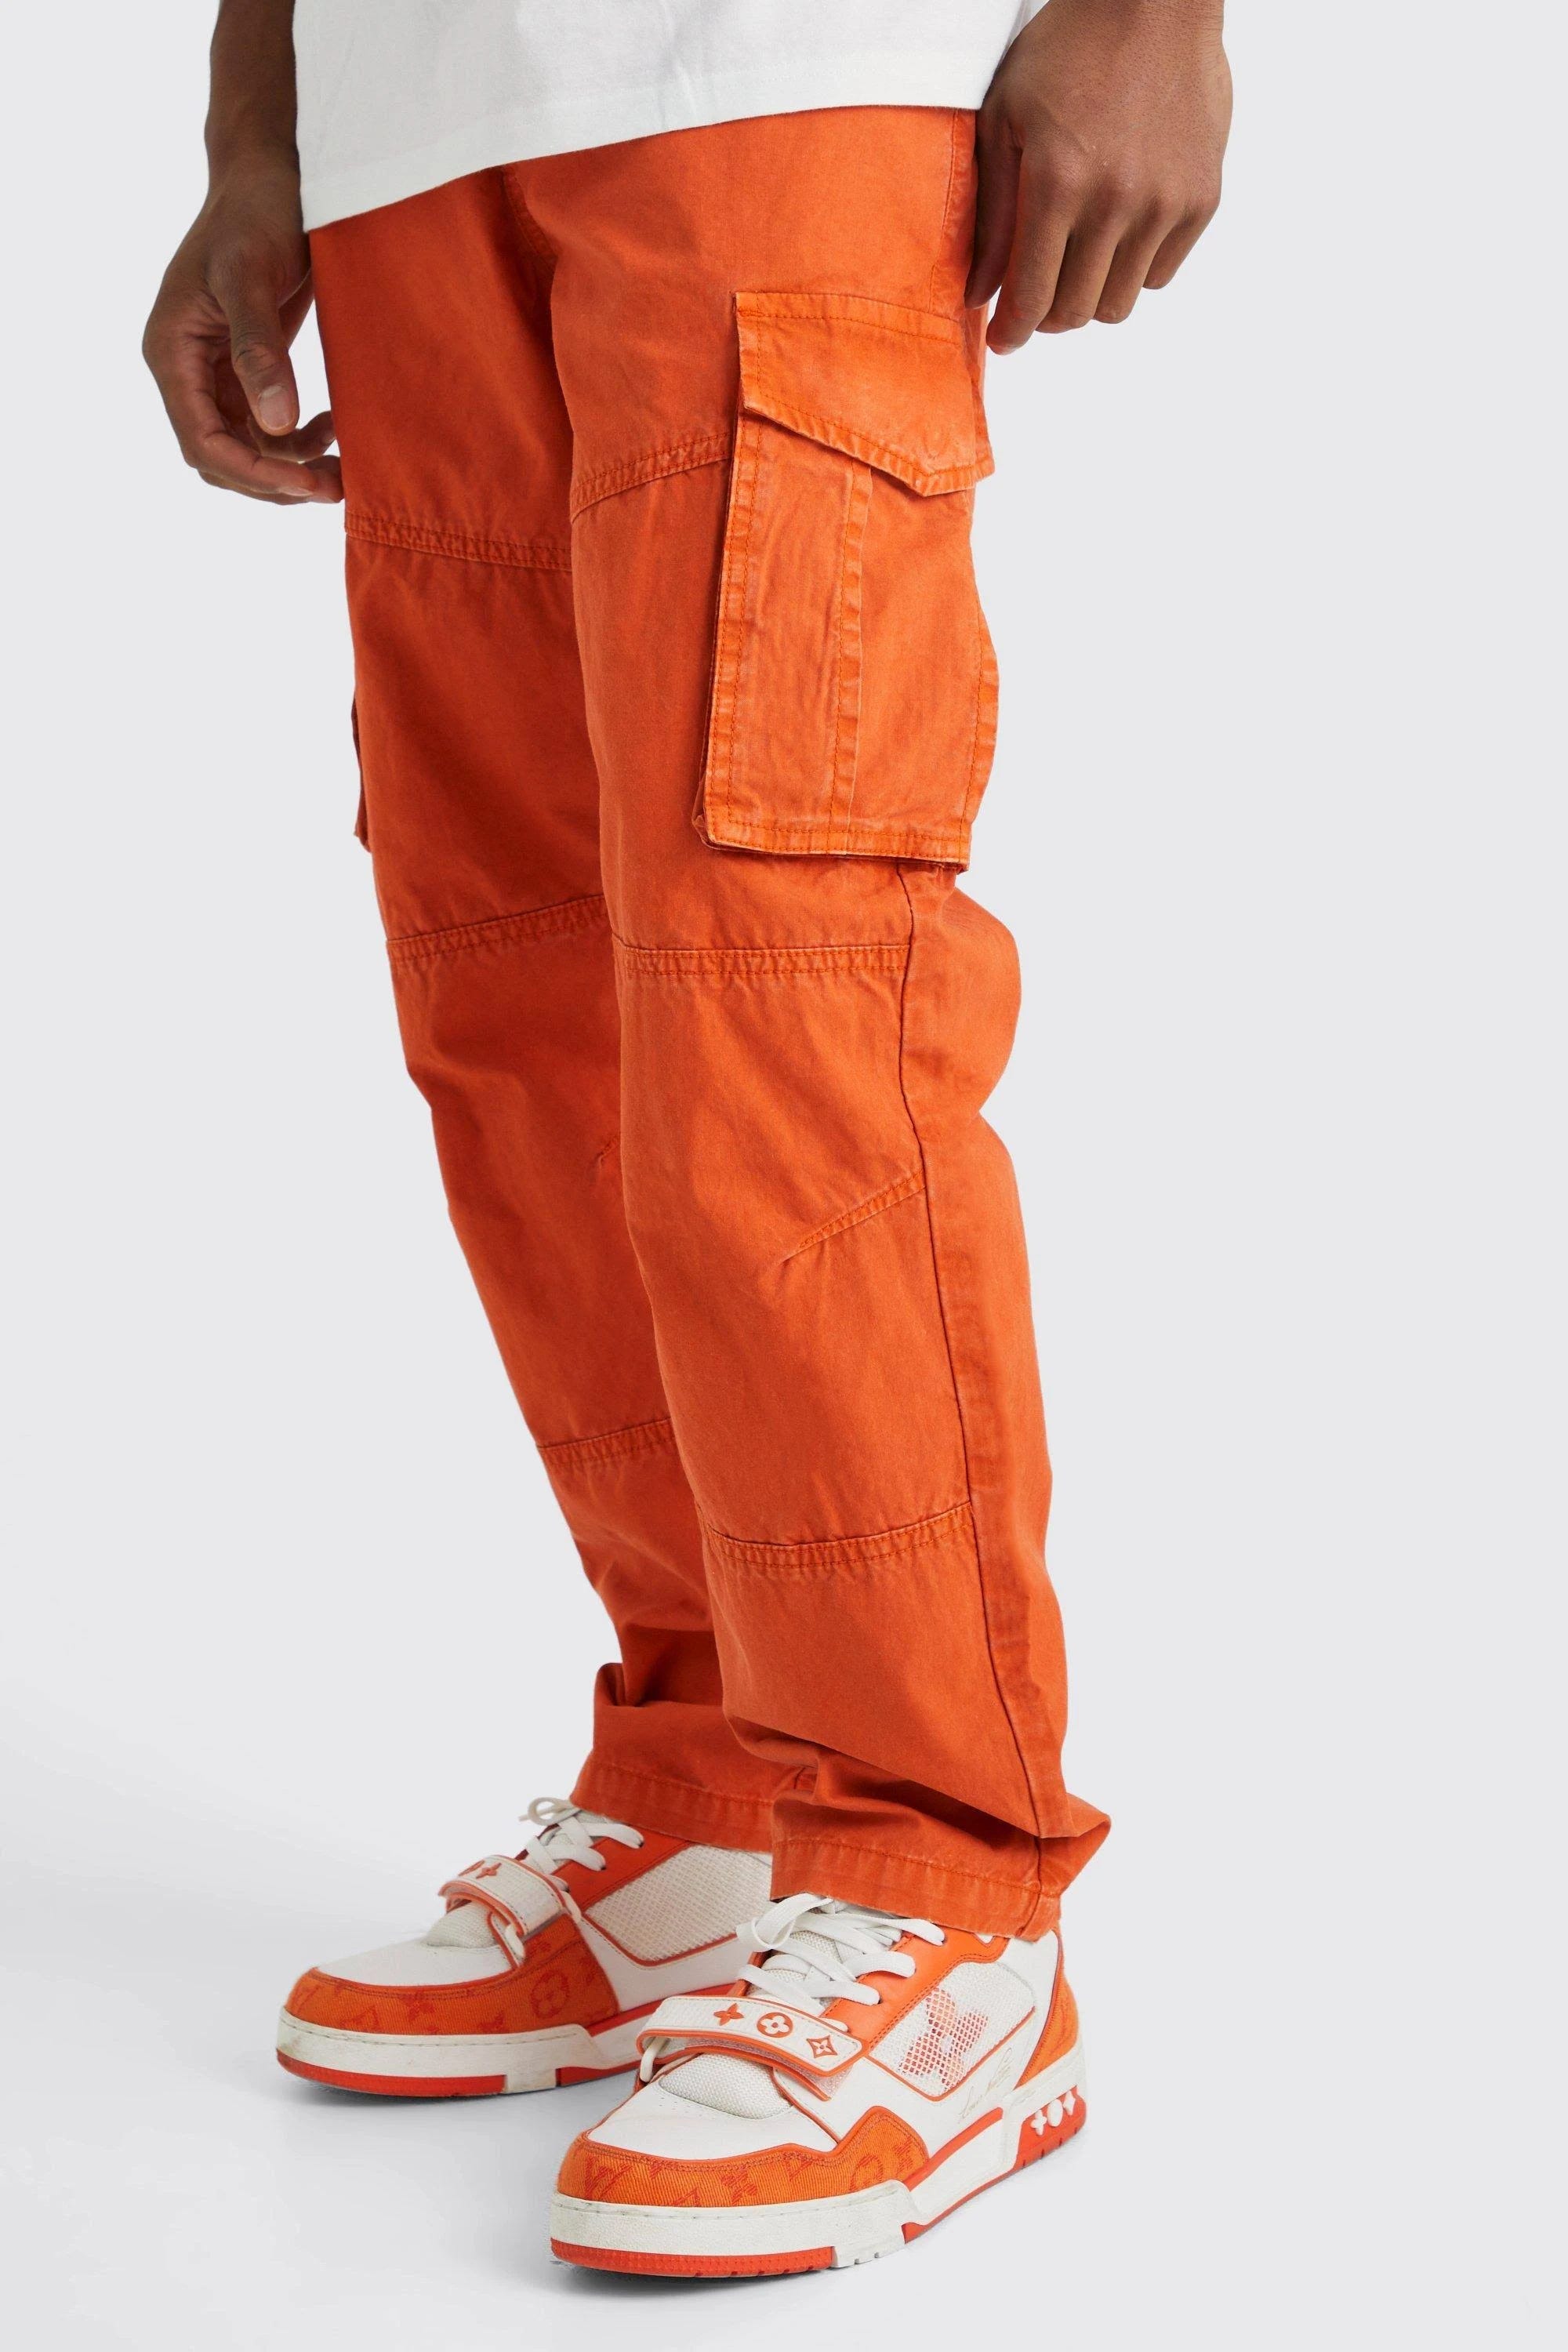 Orange Cargo Pants for Men: Stylish and Chic | Image